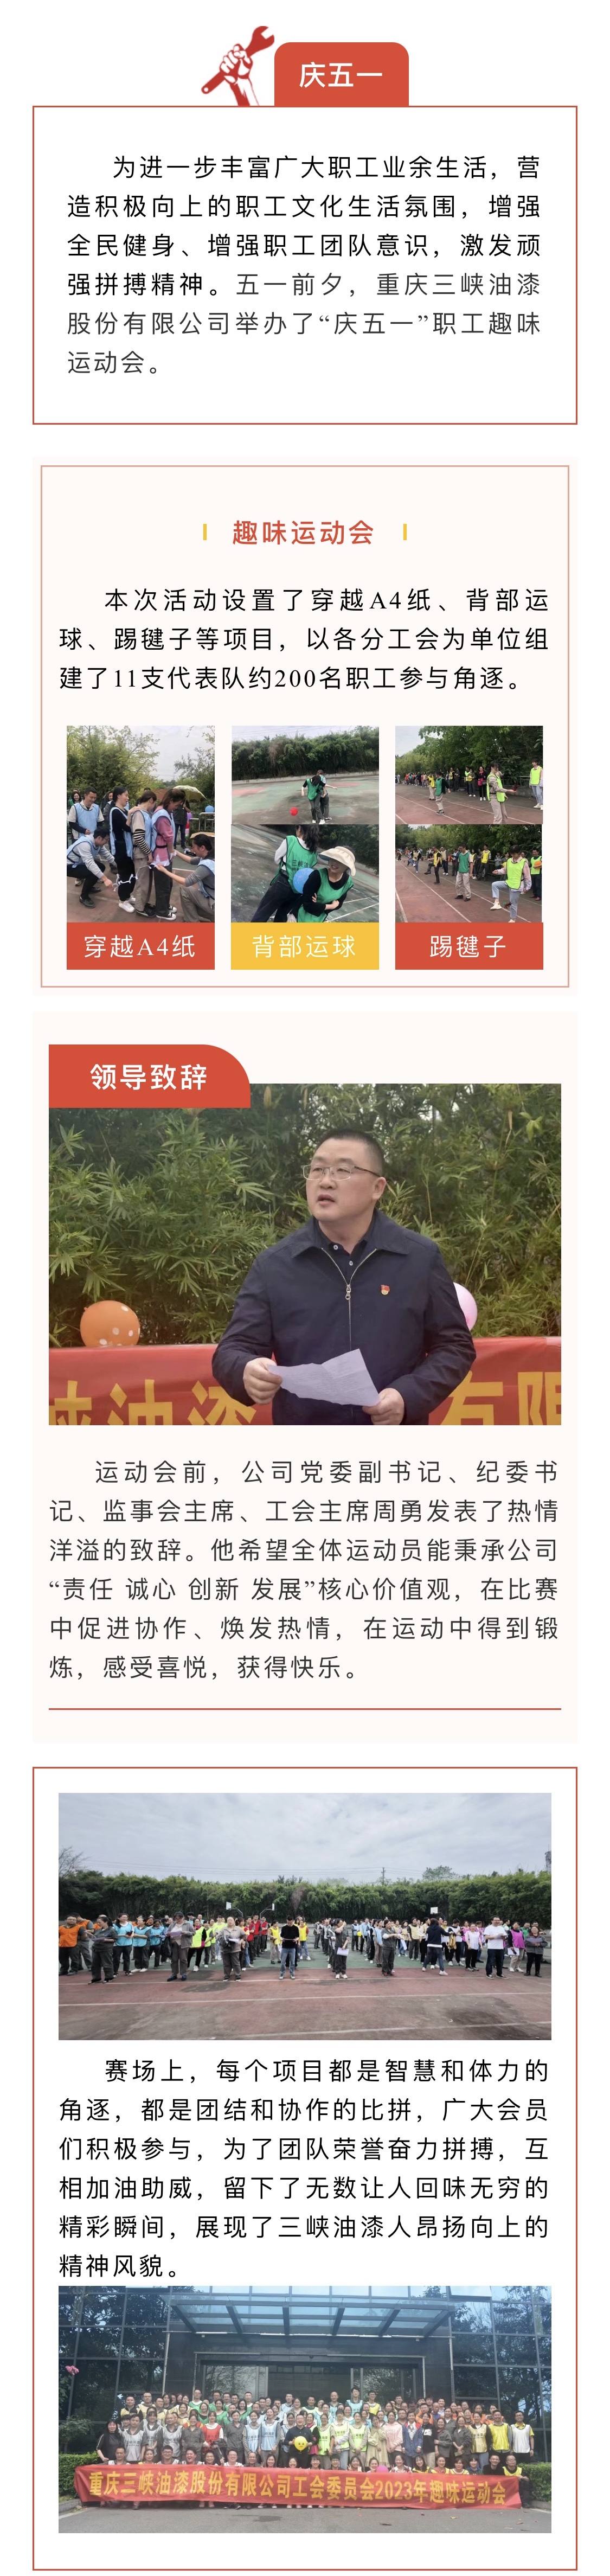 重慶三峽油漆股份有限公司開展“慶五一”職工趣味運動會